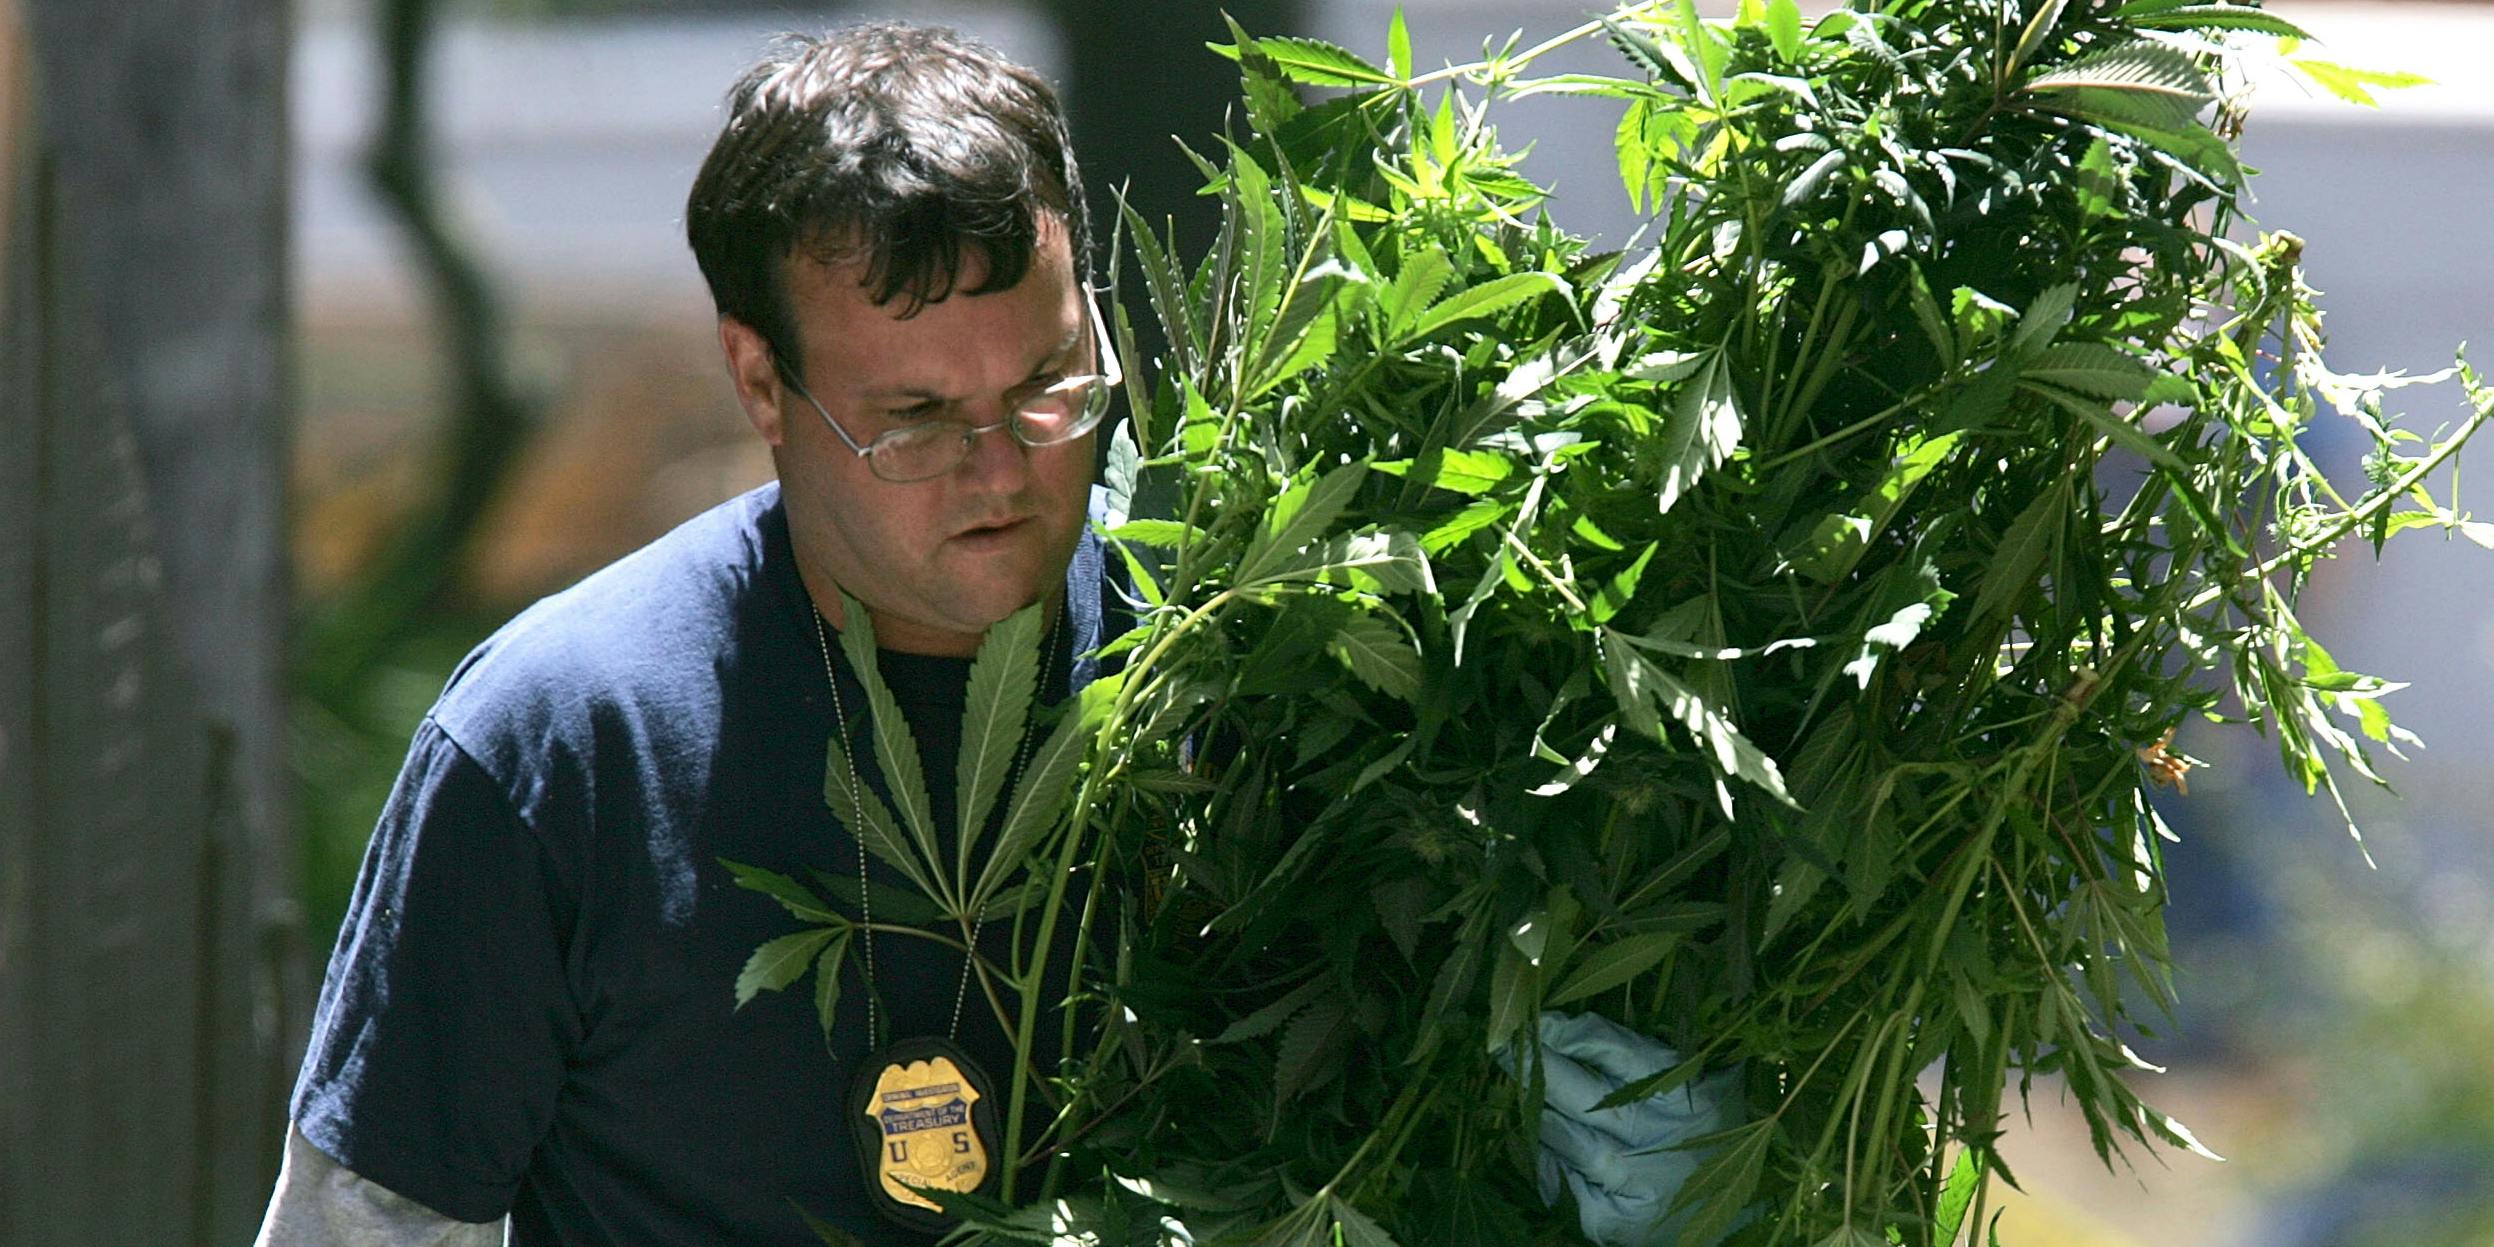 Federal Agents Raid Medical Marijuana Club in 2005